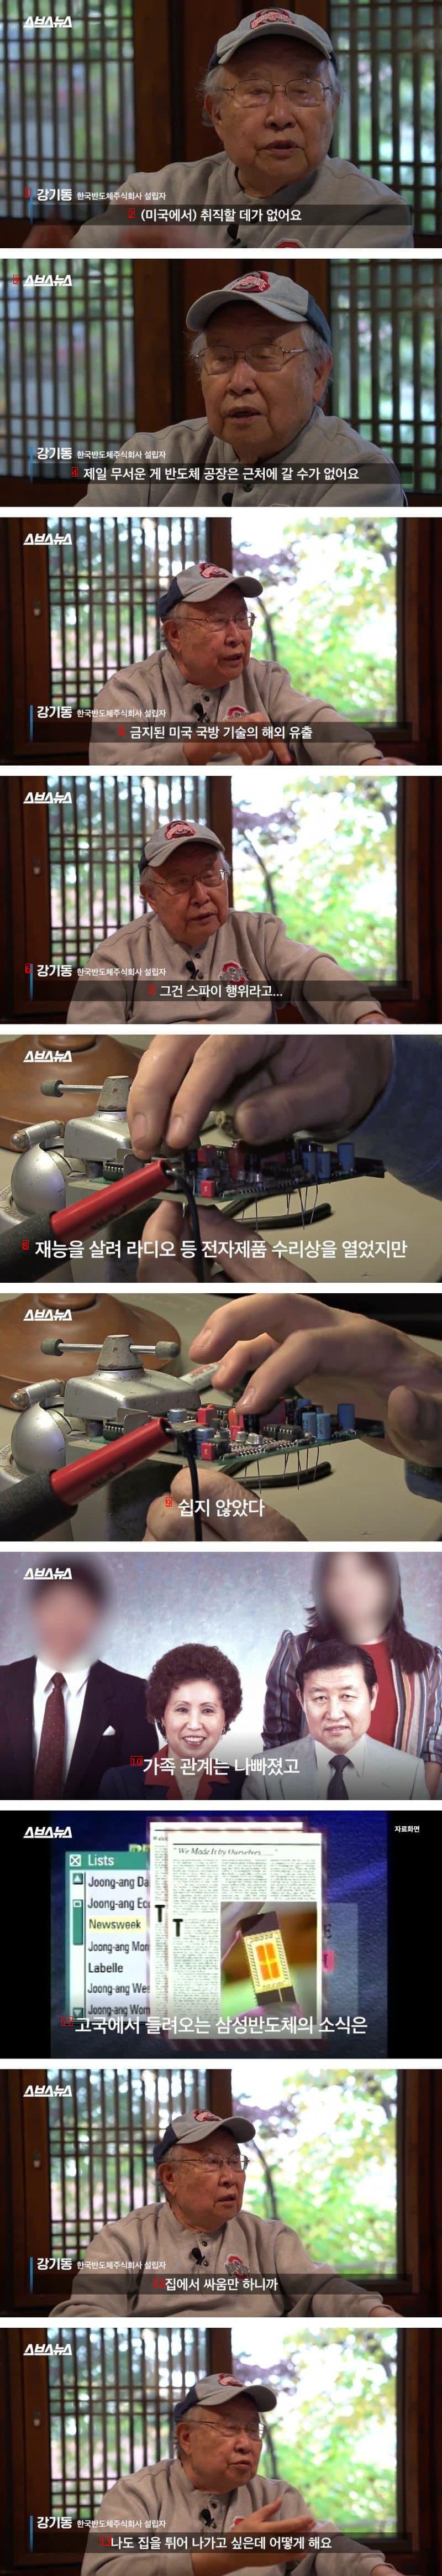 韓国初の半導体を作った人の話